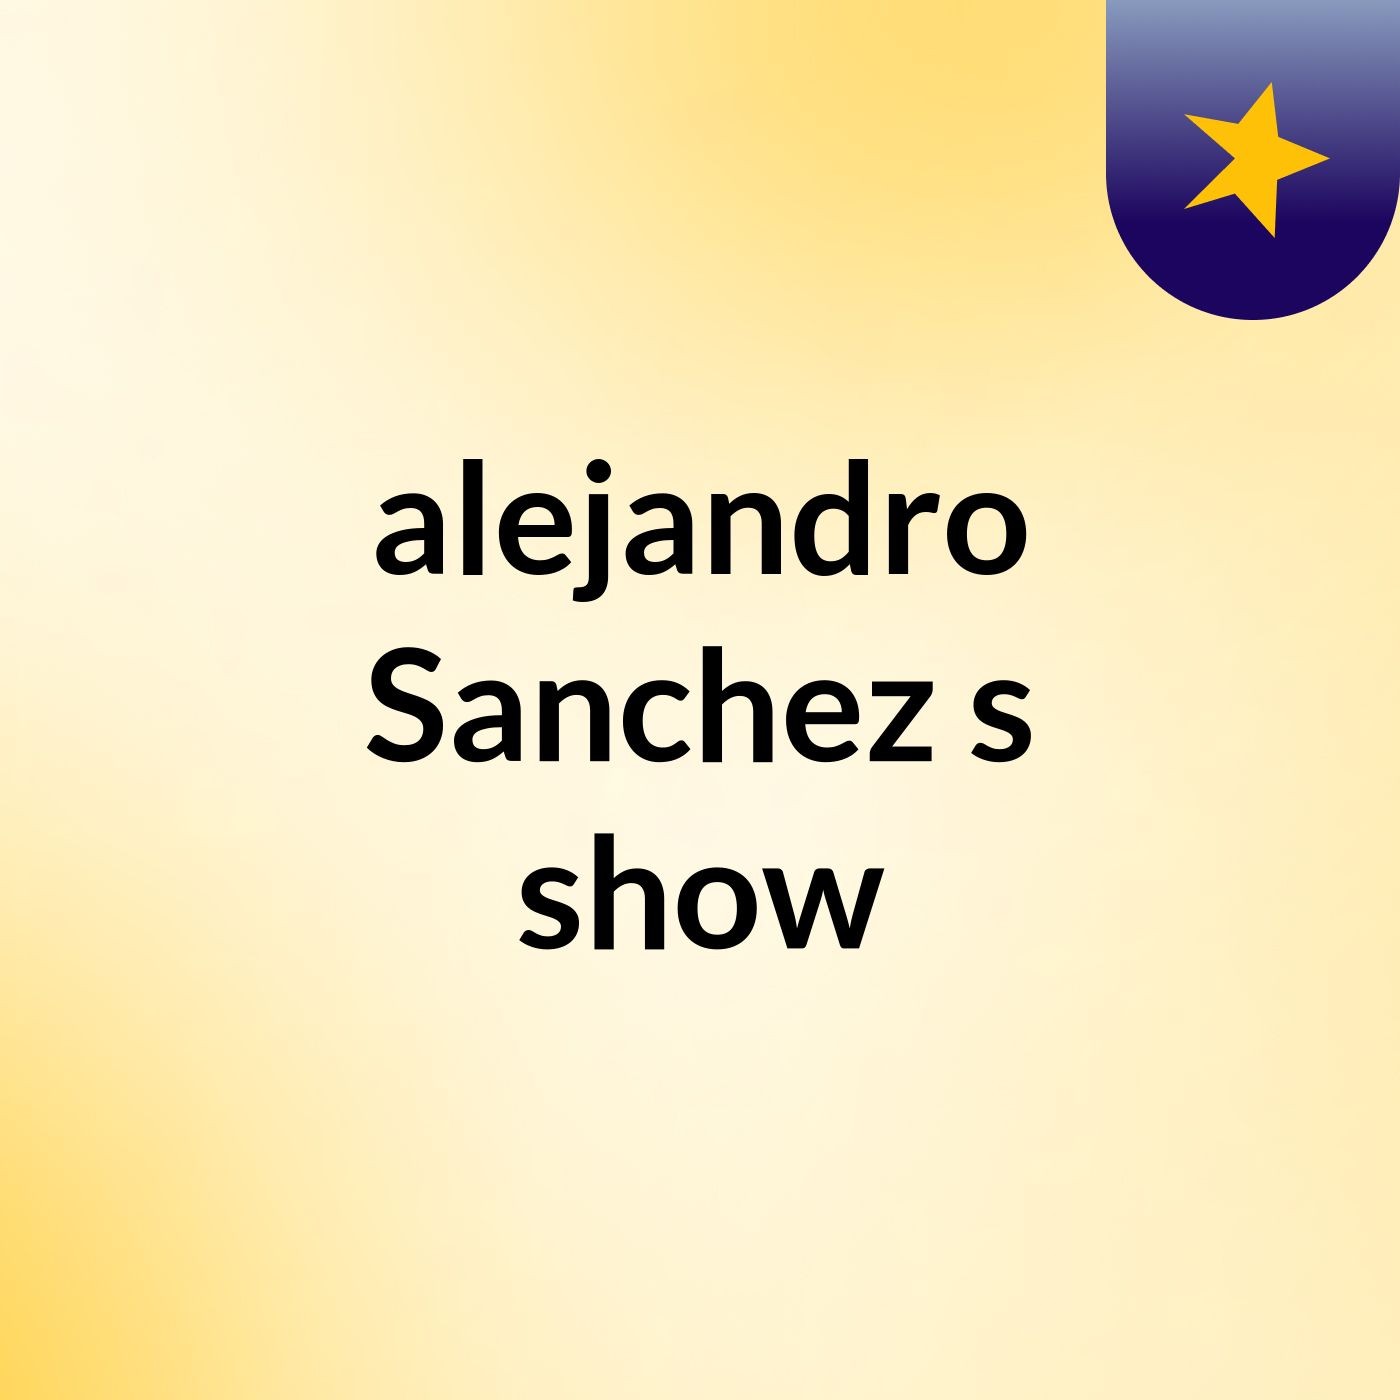 alejandro Sanchez's show